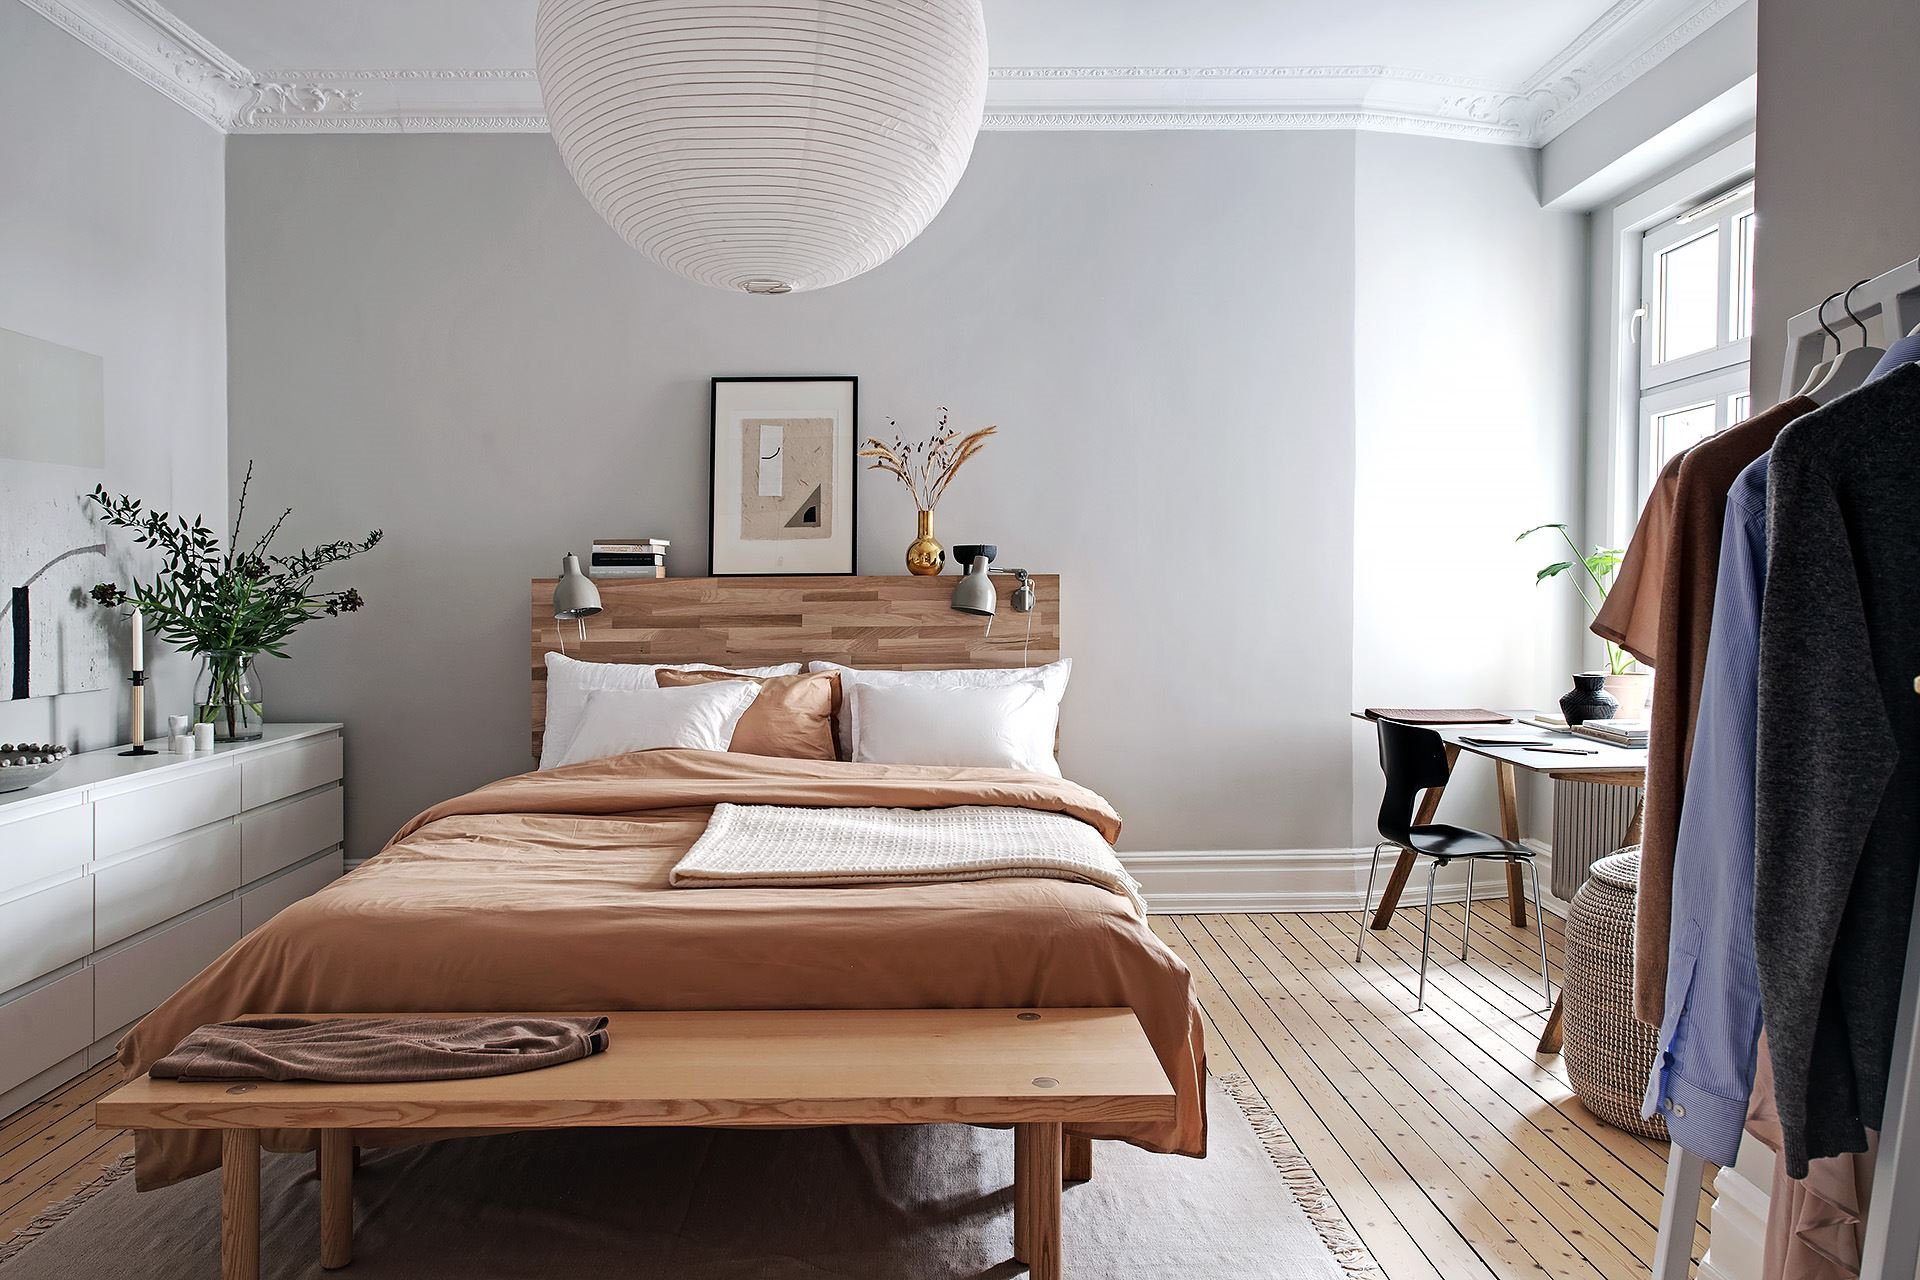 Piso con decoracion nordica moderna y paredes pintadas en color gris dormitorio con techos con molduras